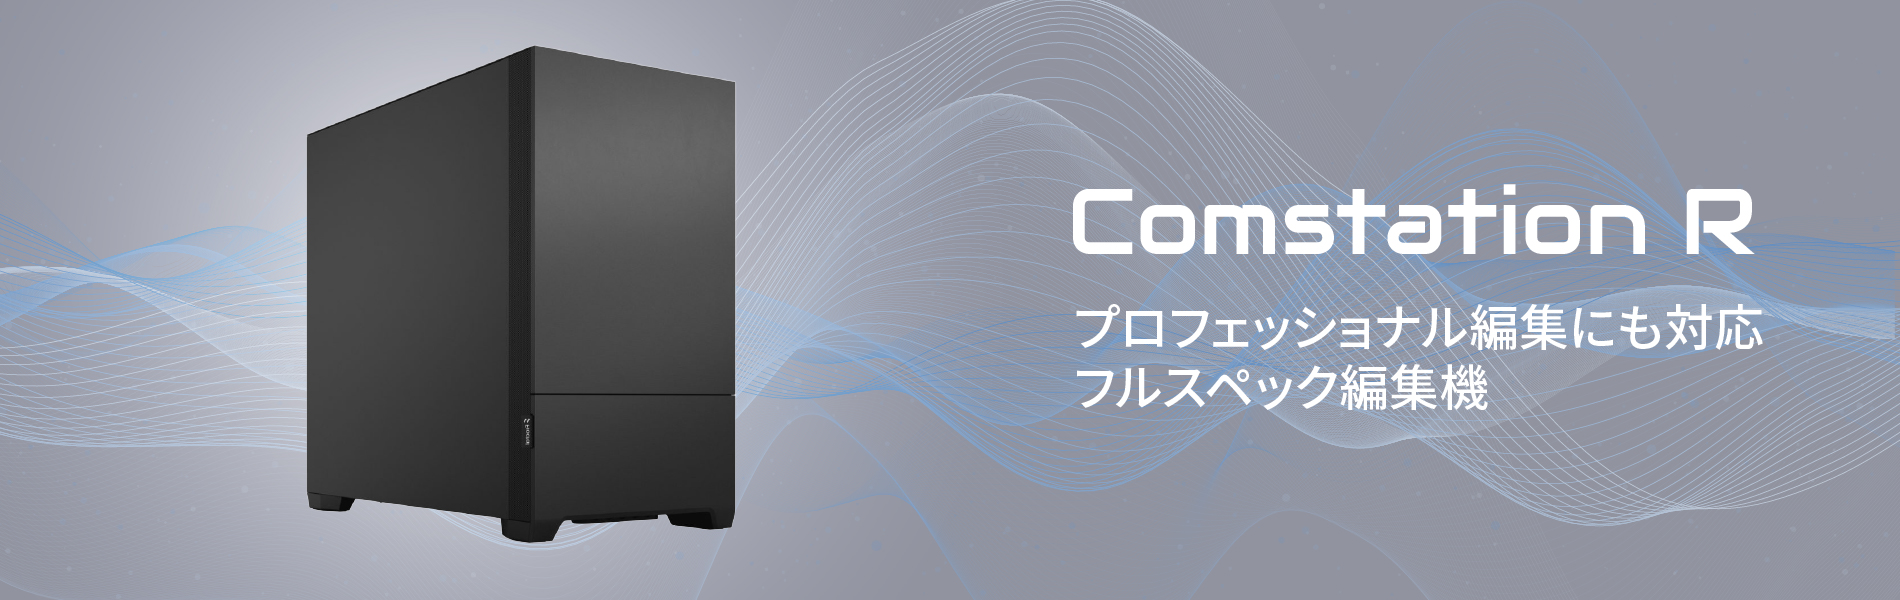 ComstationR01